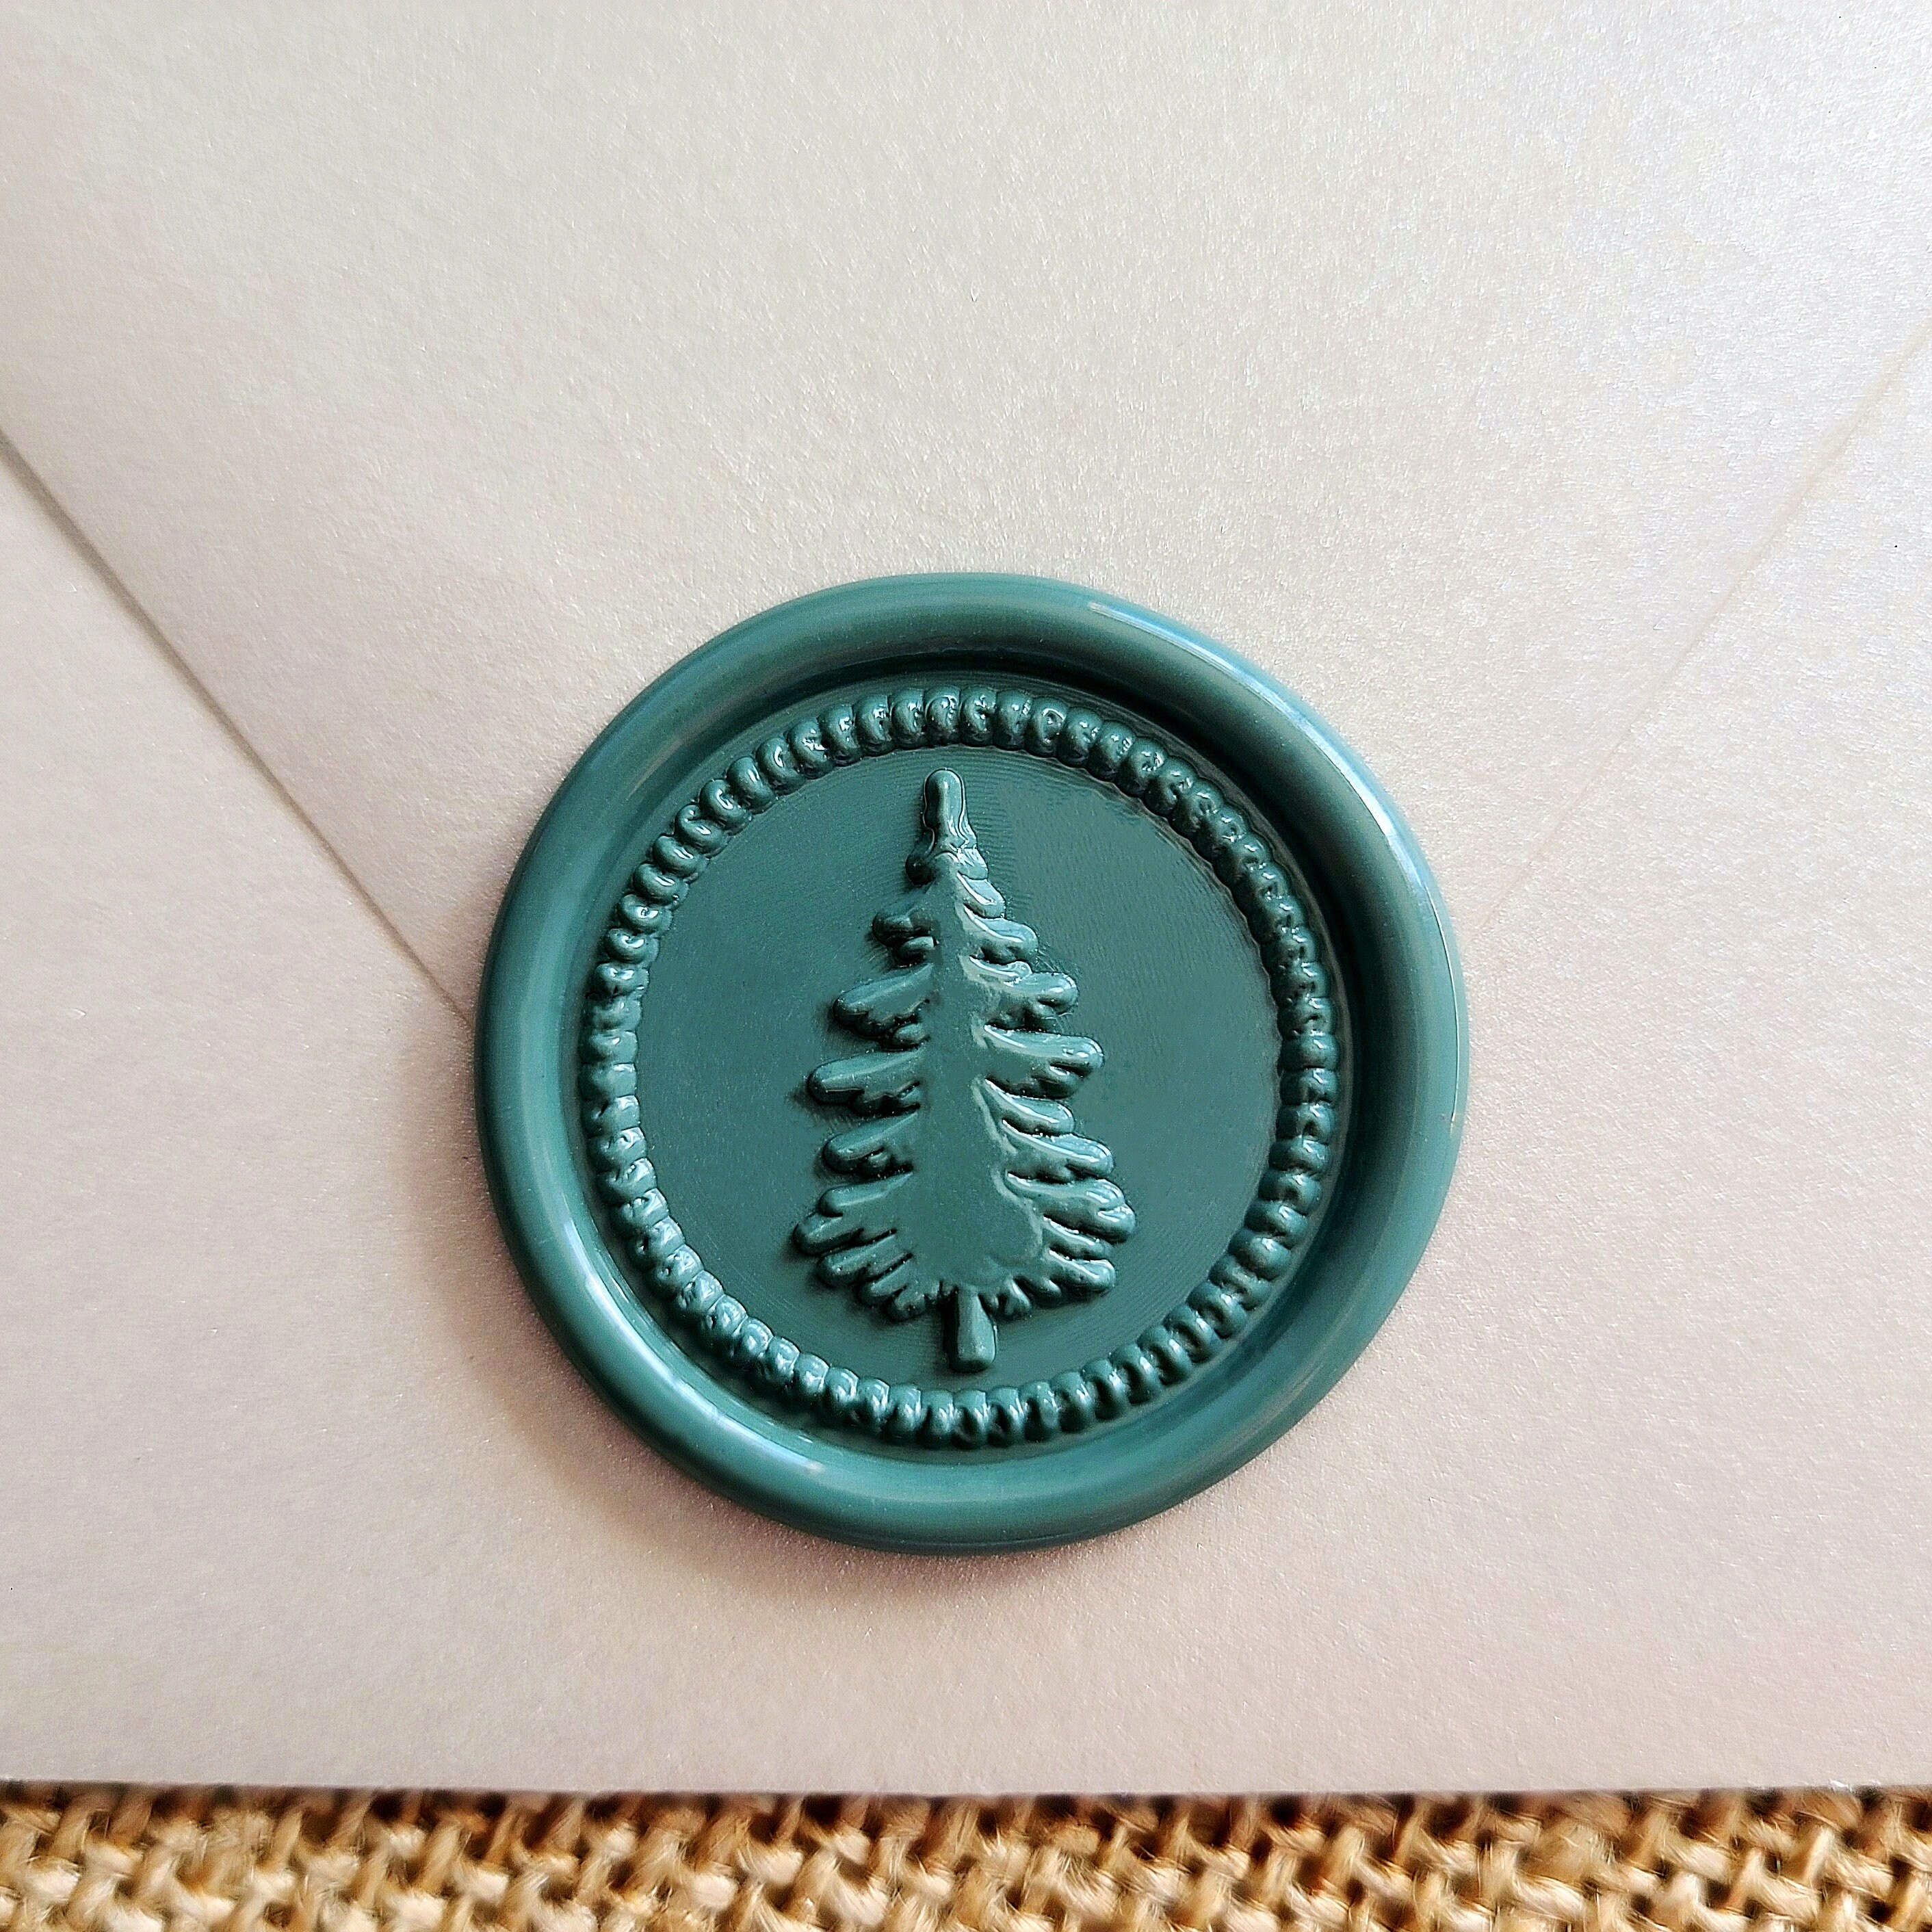 Christmas Sealing Wax Stamp Christmas Tree Wax Seal Stamp Gift Package Wax  Seal Christmas Gift Wax Seal Kit Wax Sealing Stamp 